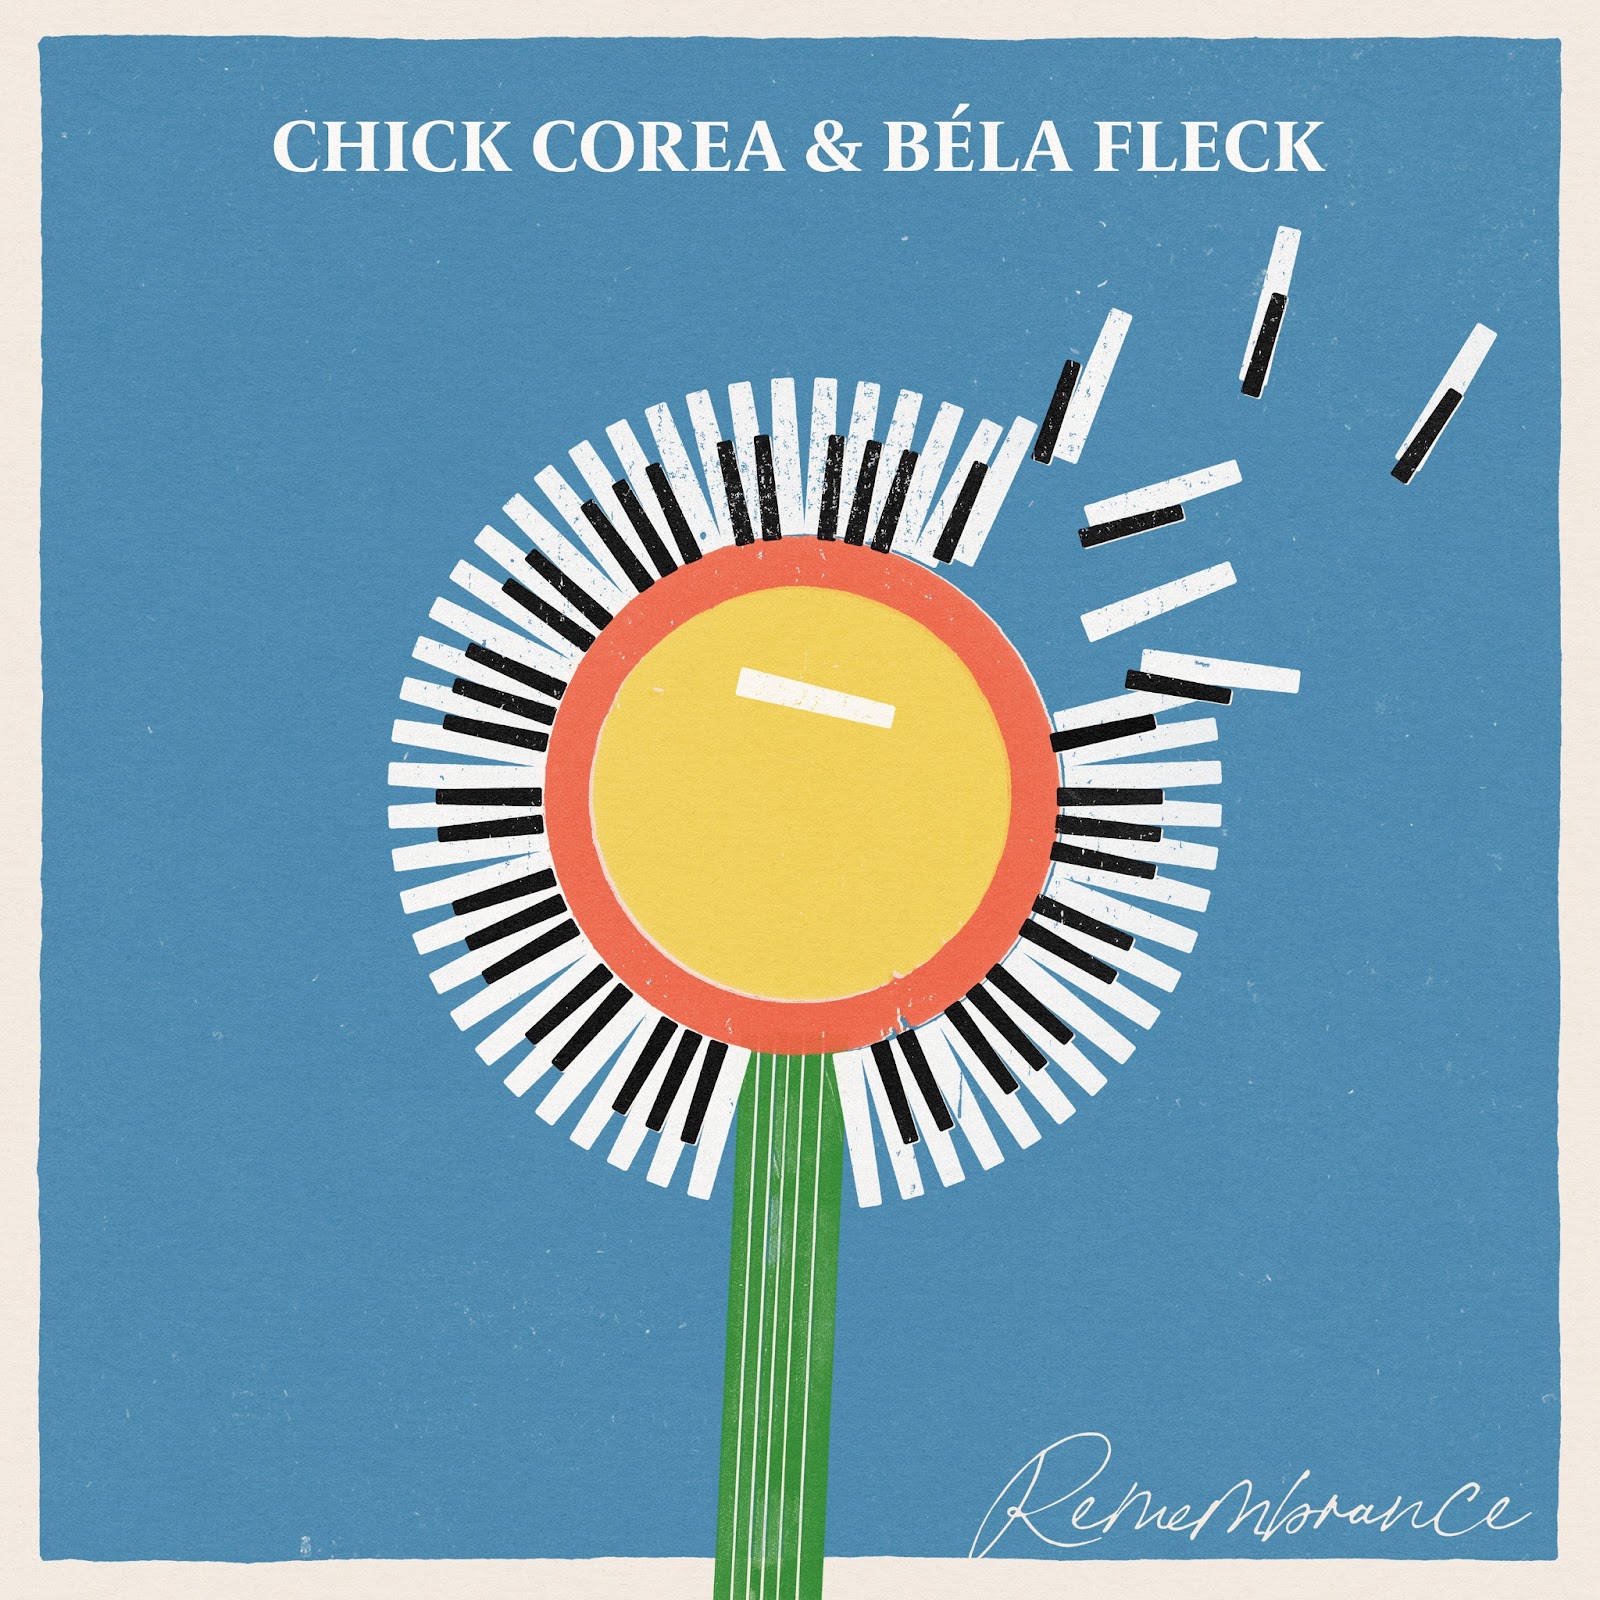 Chick Corea & Bela Fleck